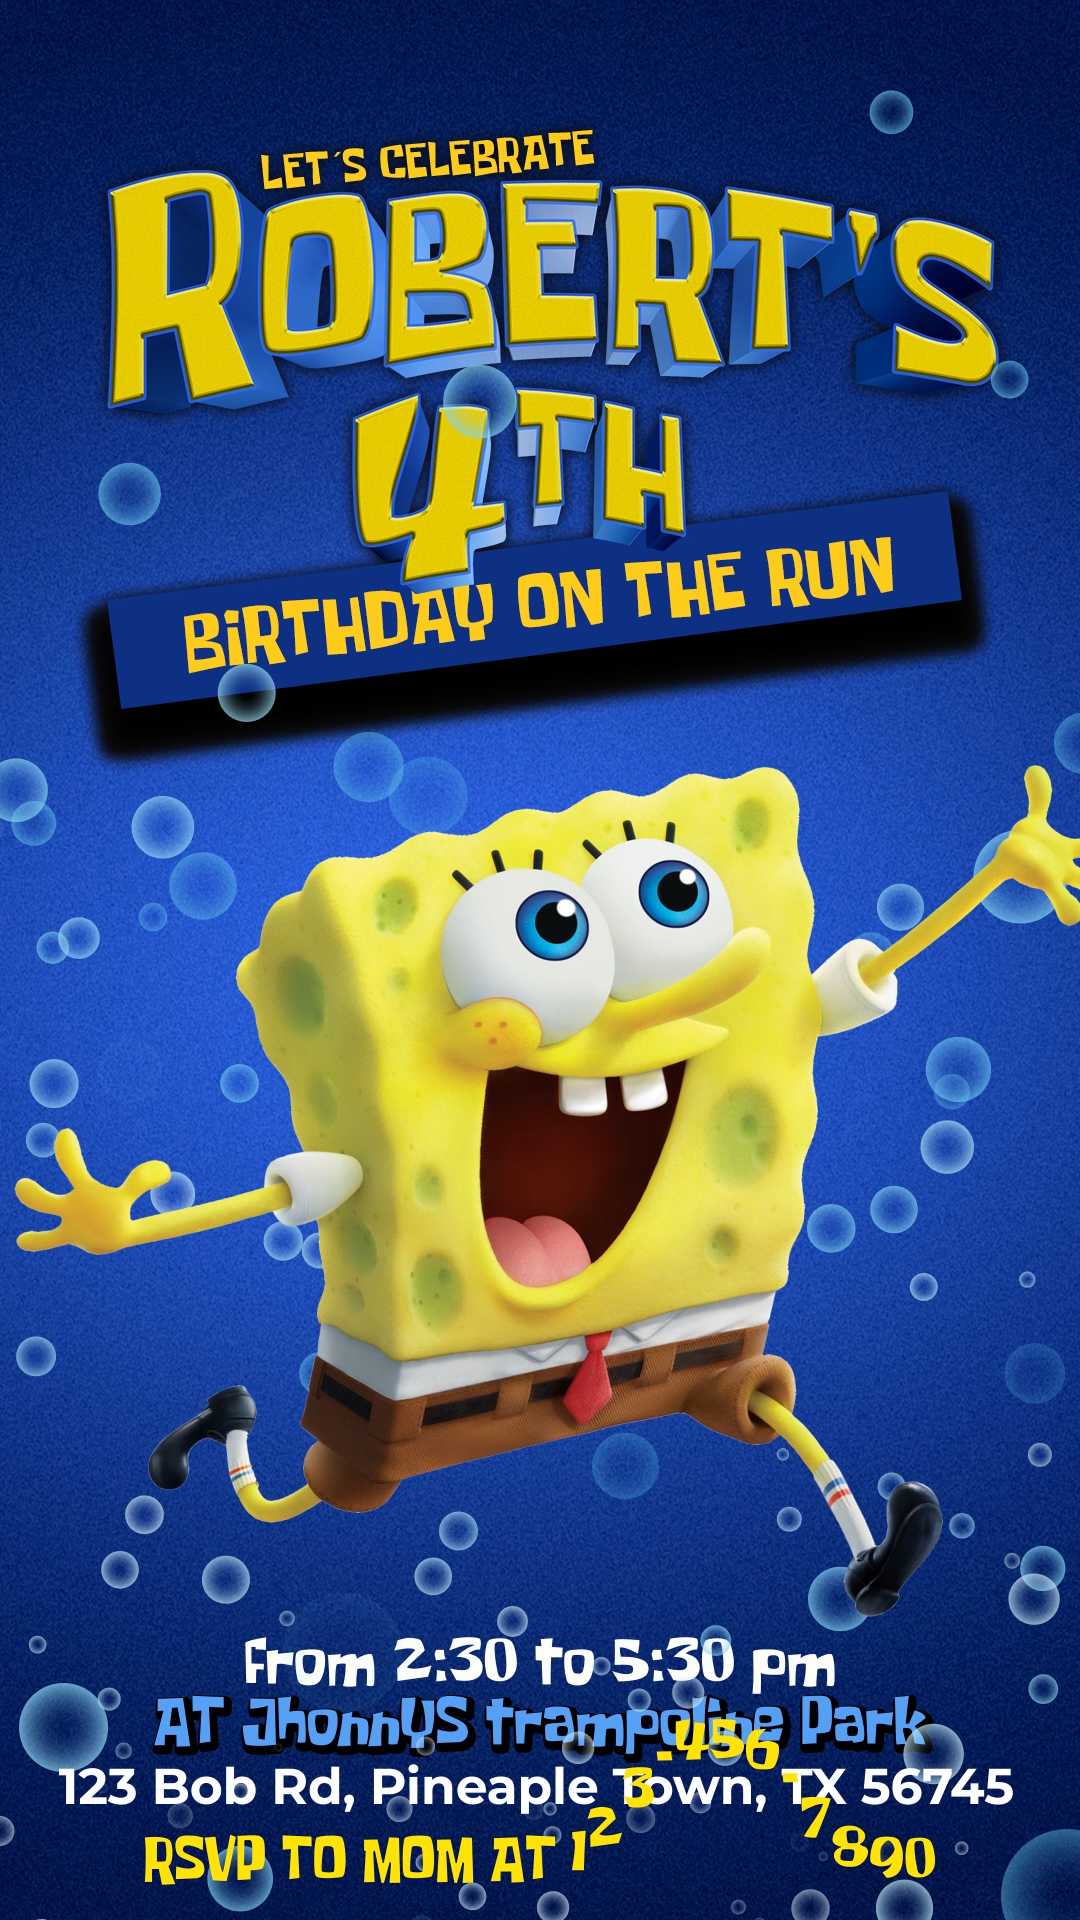 spongebob 1st birthday background